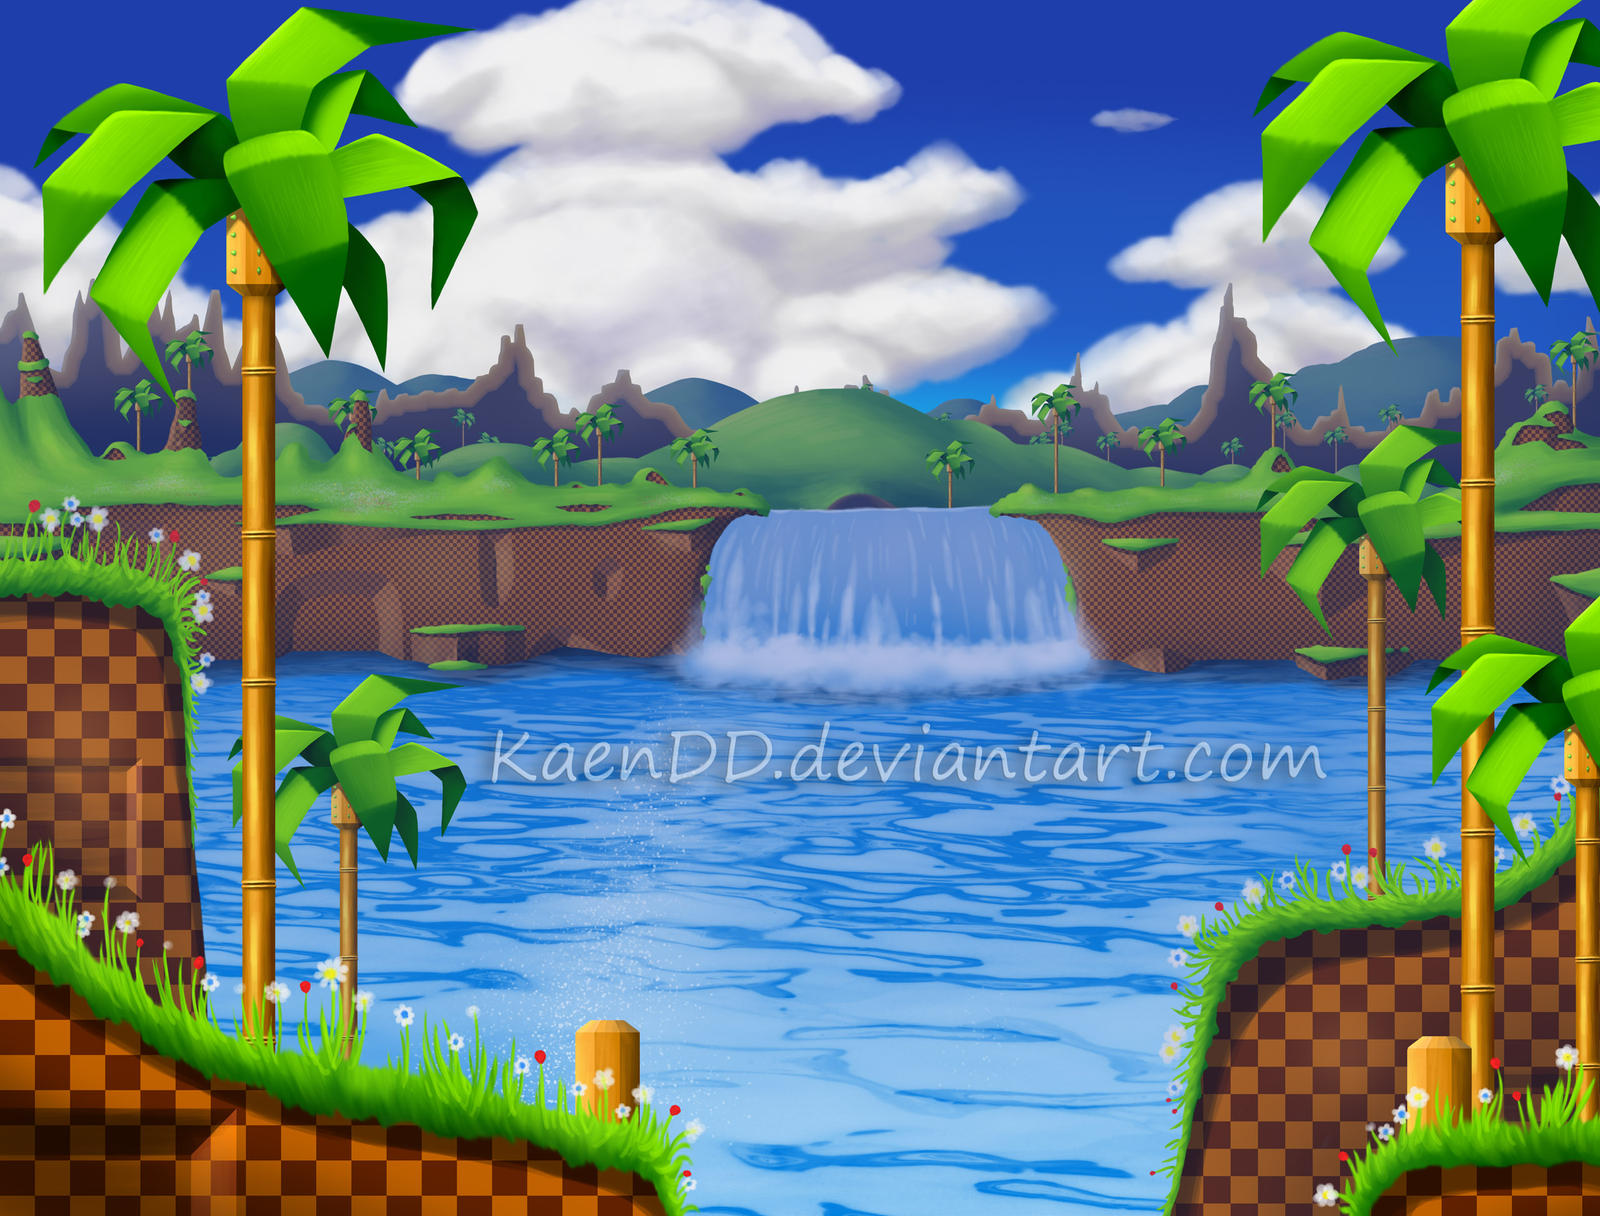 Green Hill Zone Sonic HD mang tới một trải nghiệm hoàn toàn khác biệt với những gì chúng ta từng biết về các phiên bản trước đó của Sonic. Với các hình ảnh đẹp mắt và chất lượng HD, bạn sẽ chìm đắm trong thế giới ảo của Sonic một cách tuyệt đẹp.